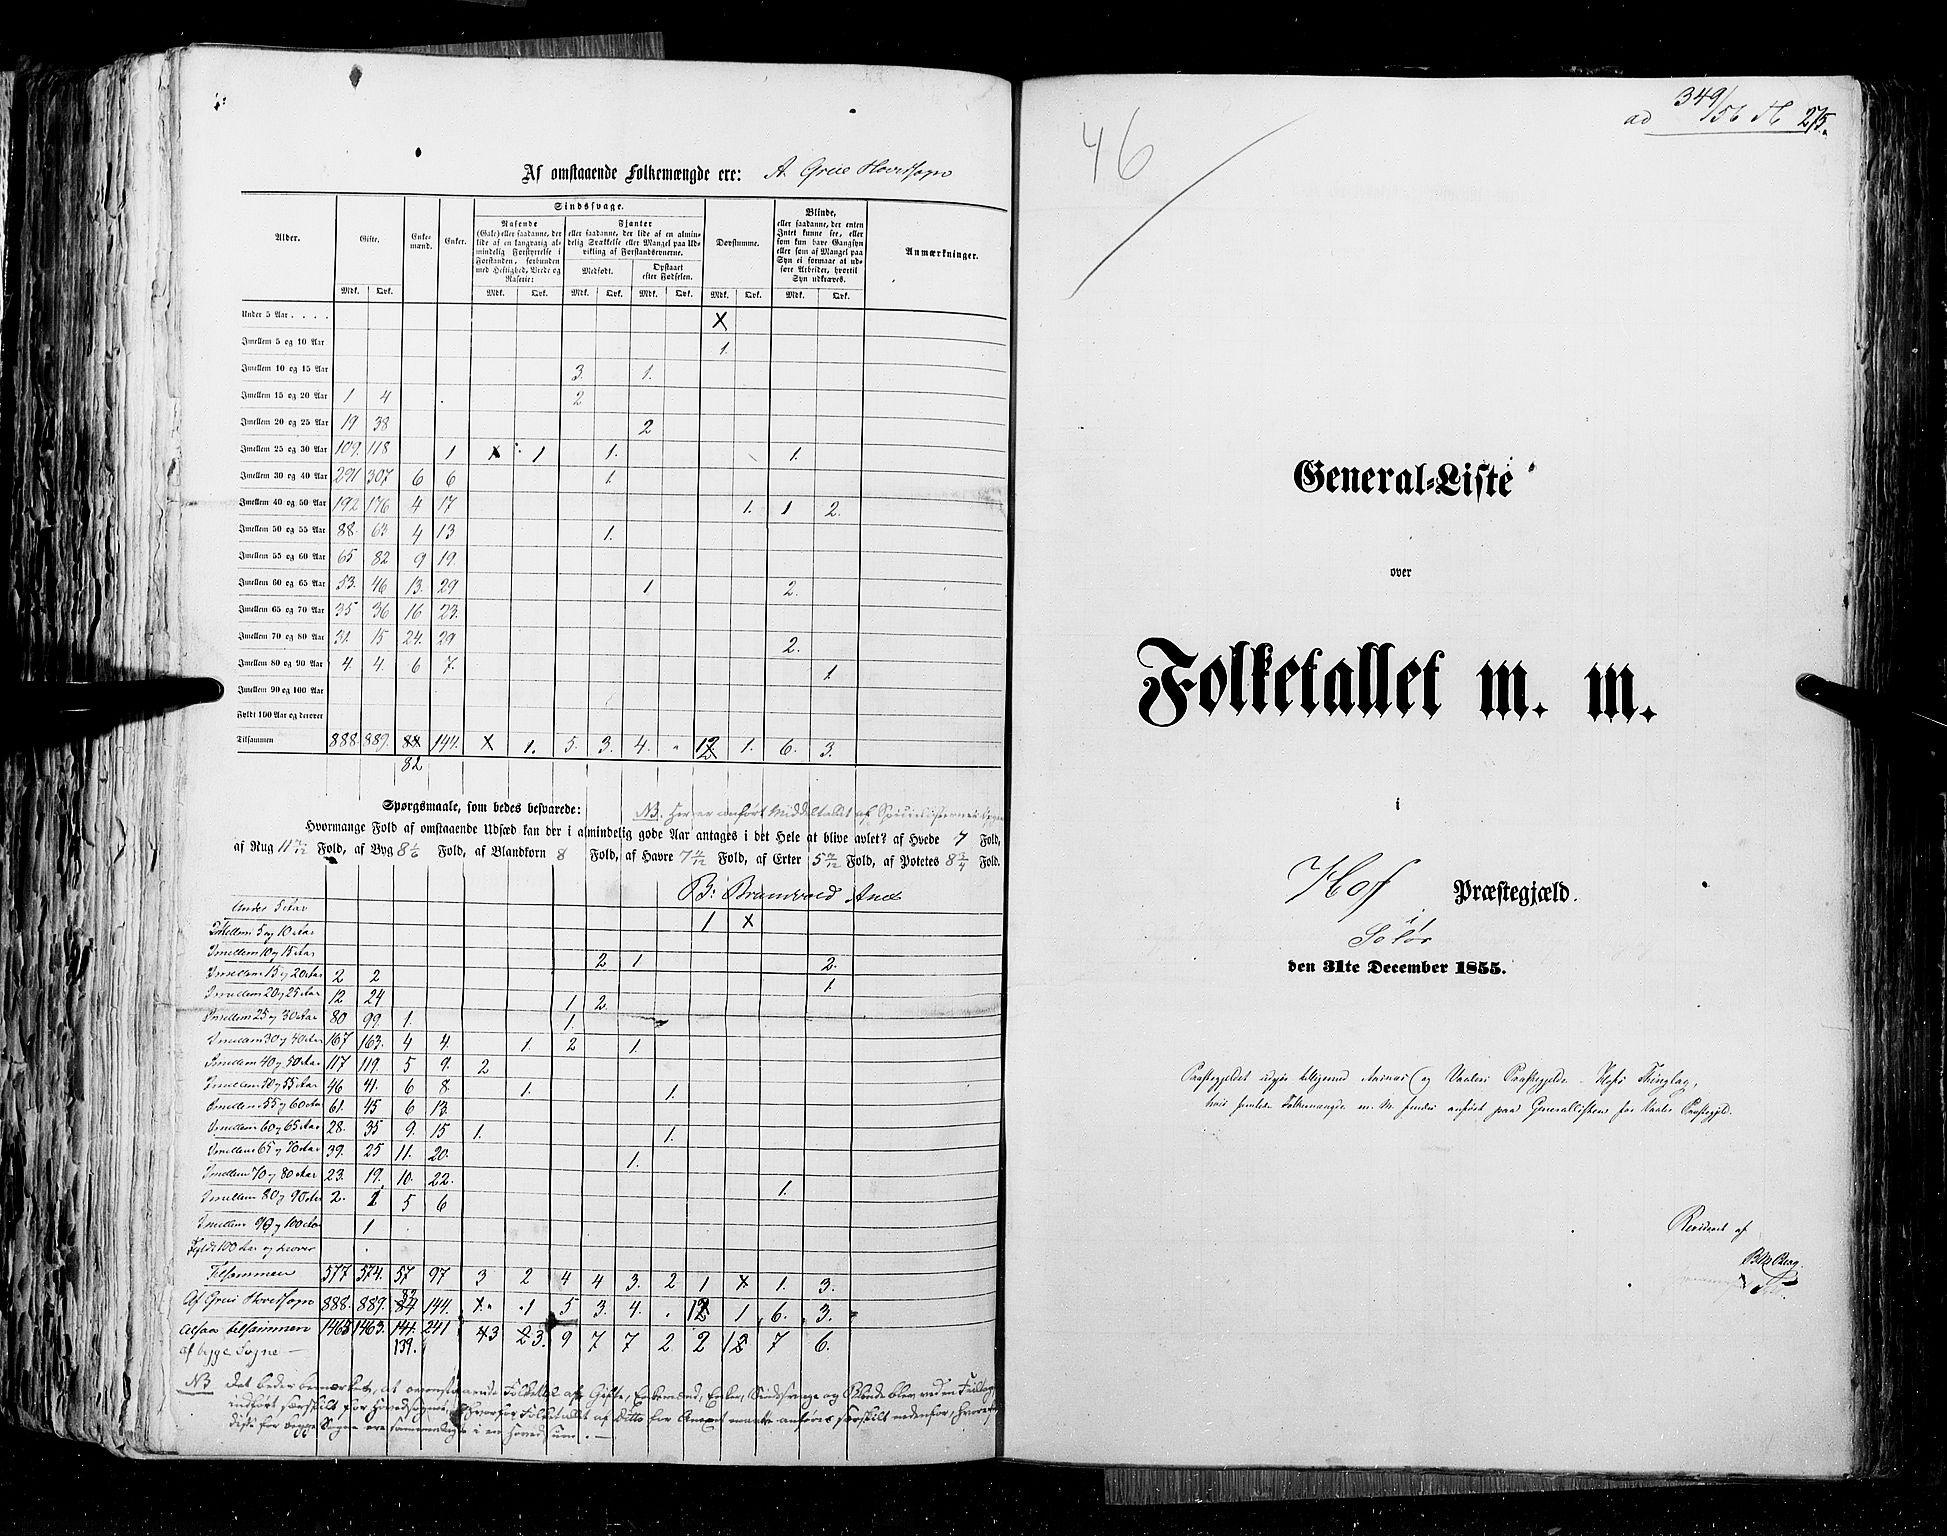 RA, Folketellingen 1855, bind 1: Akershus amt, Smålenenes amt og Hedemarken amt, 1855, s. 275